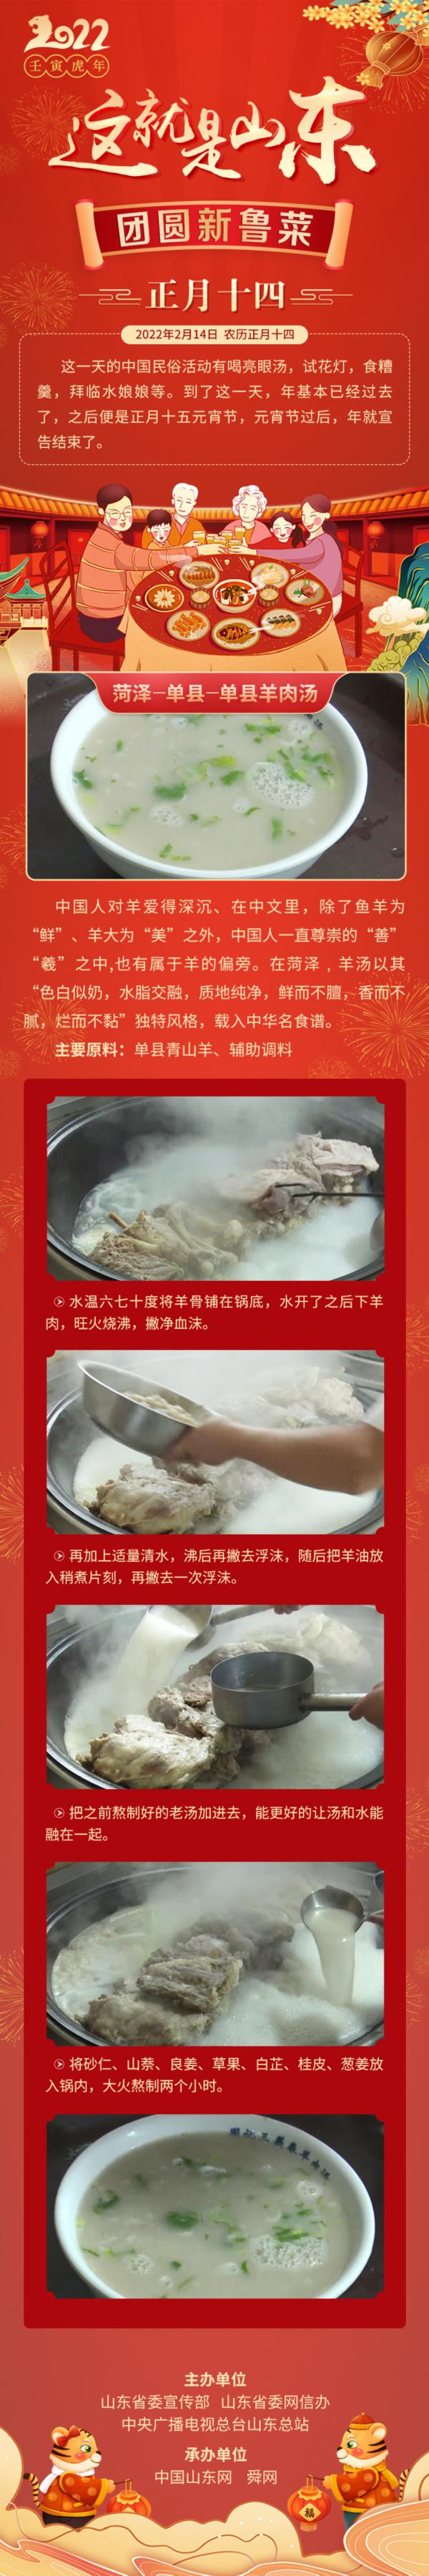 这就是山东·团圆新鲁菜——菏泽-单县-单县羊肉汤